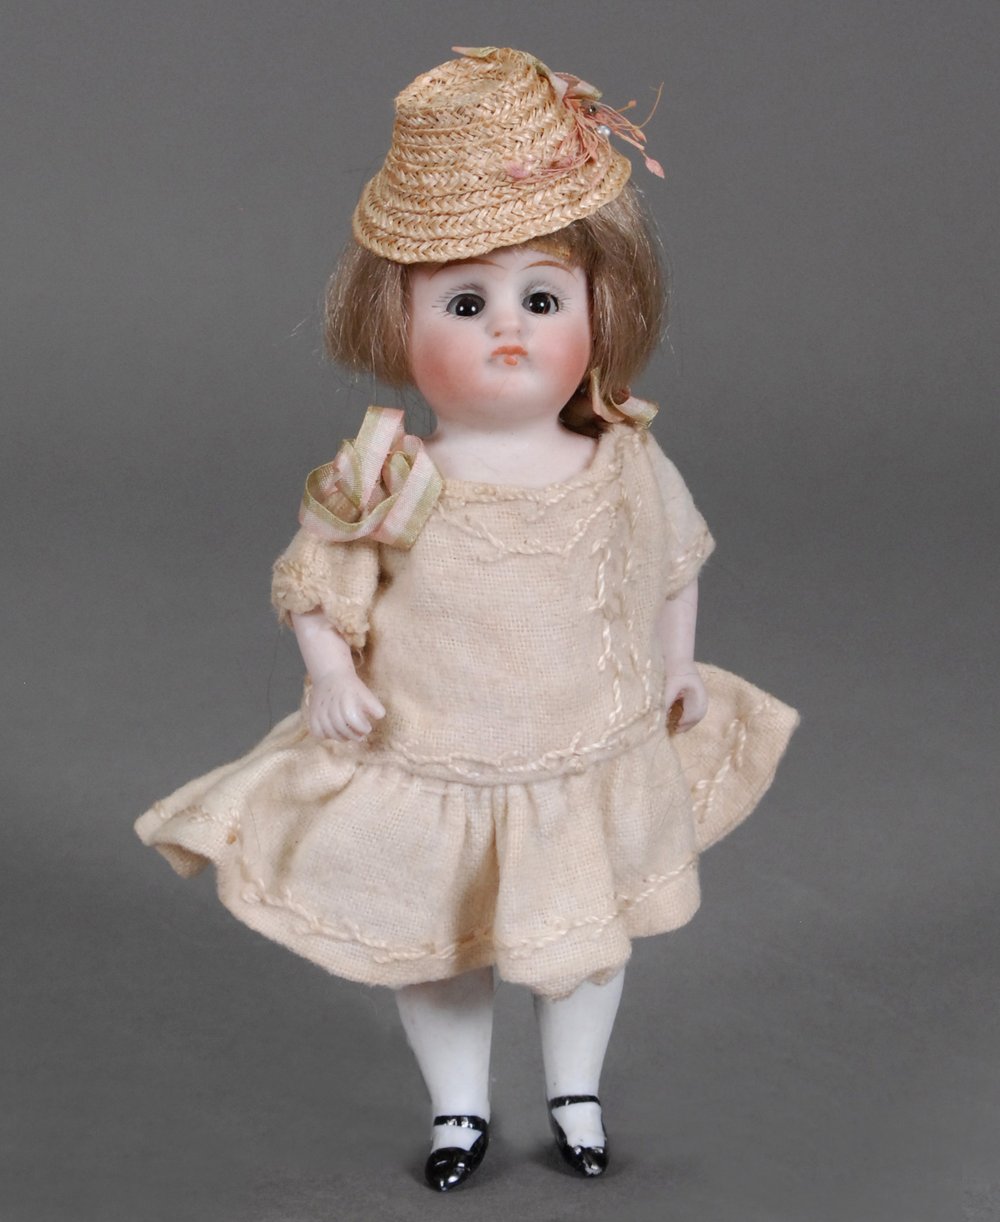 Vintage Bisque Doll 7 girl doll KBH U.S.A.